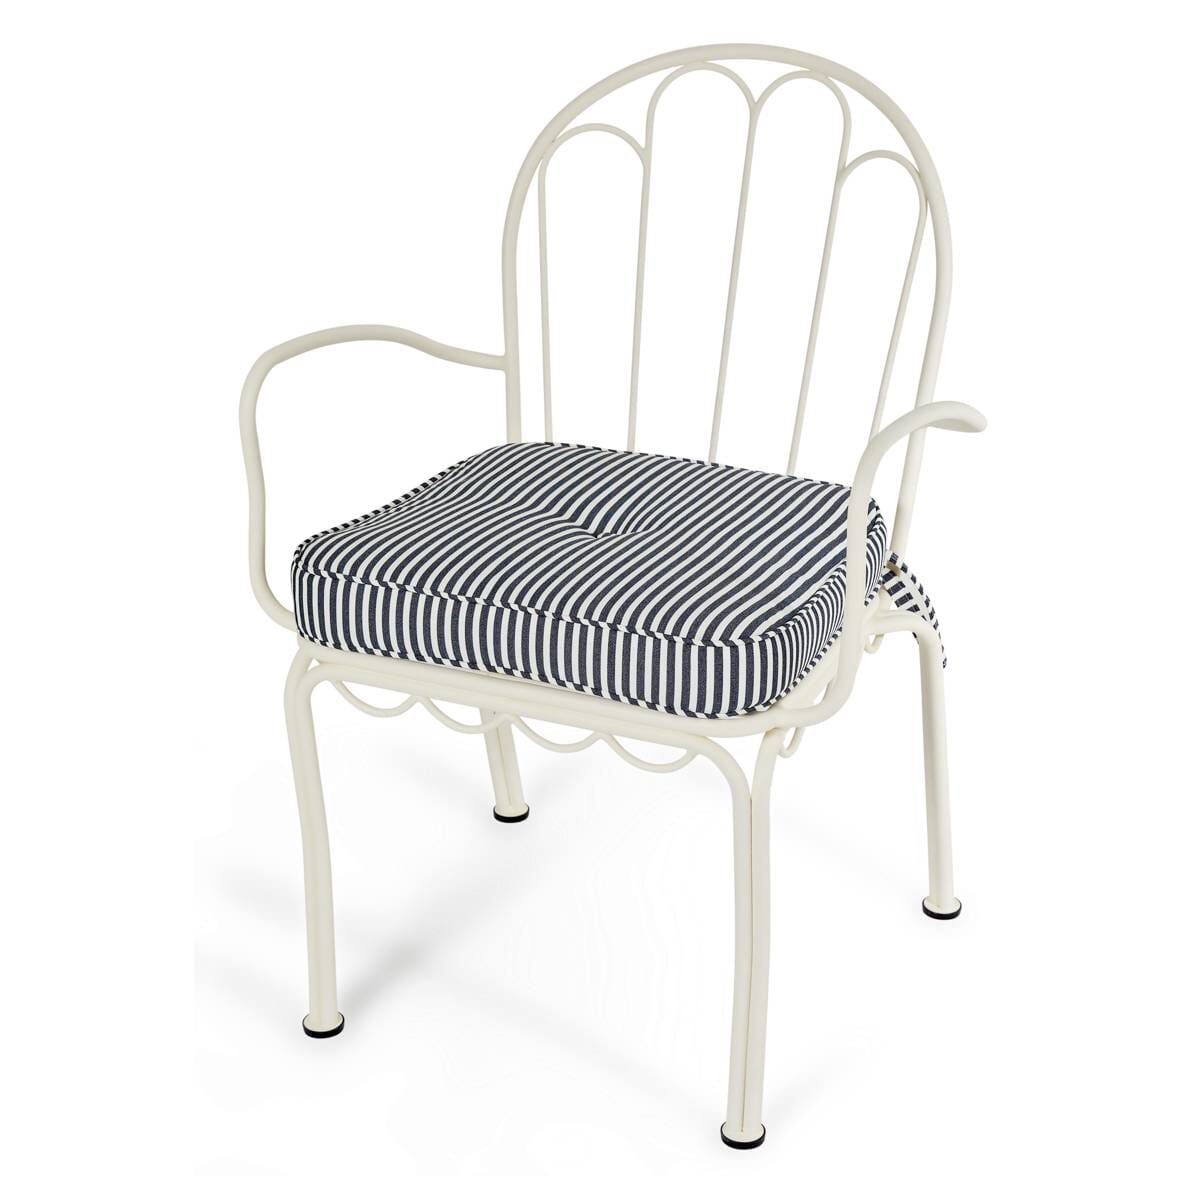 The Al Fresco Chair Cushion - Lauren's Navy Stripe Al Fresco Chair Cushion Business & Pleasure Co Aus 